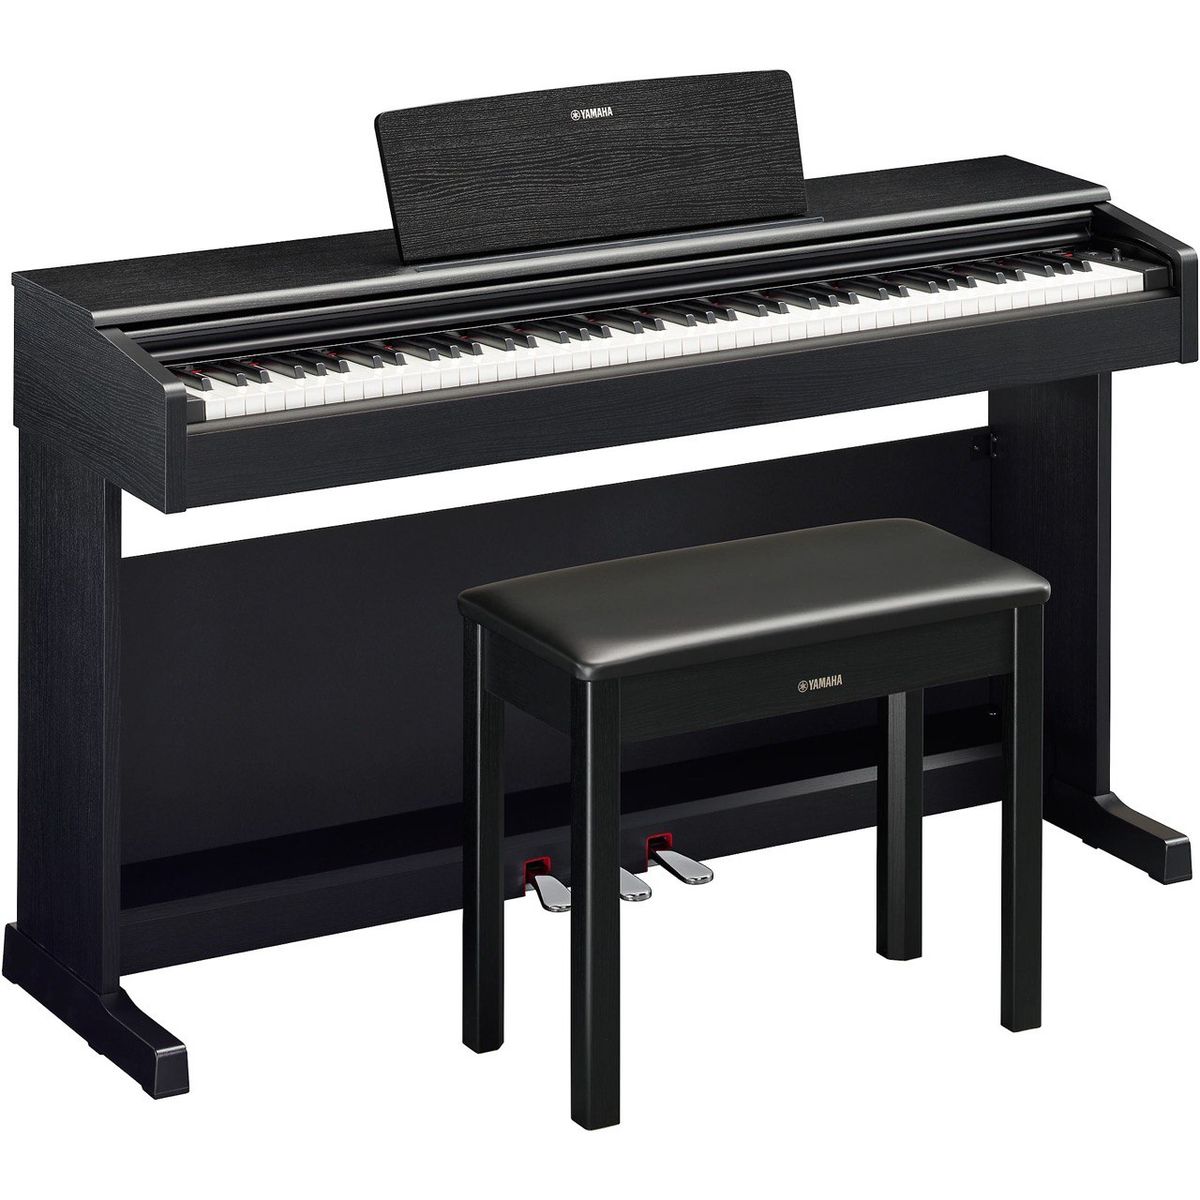 Цифровые пианино Yamaha YDP-145B Arius (банкетка в комплекте) спот поворотный arius 3 м² белый